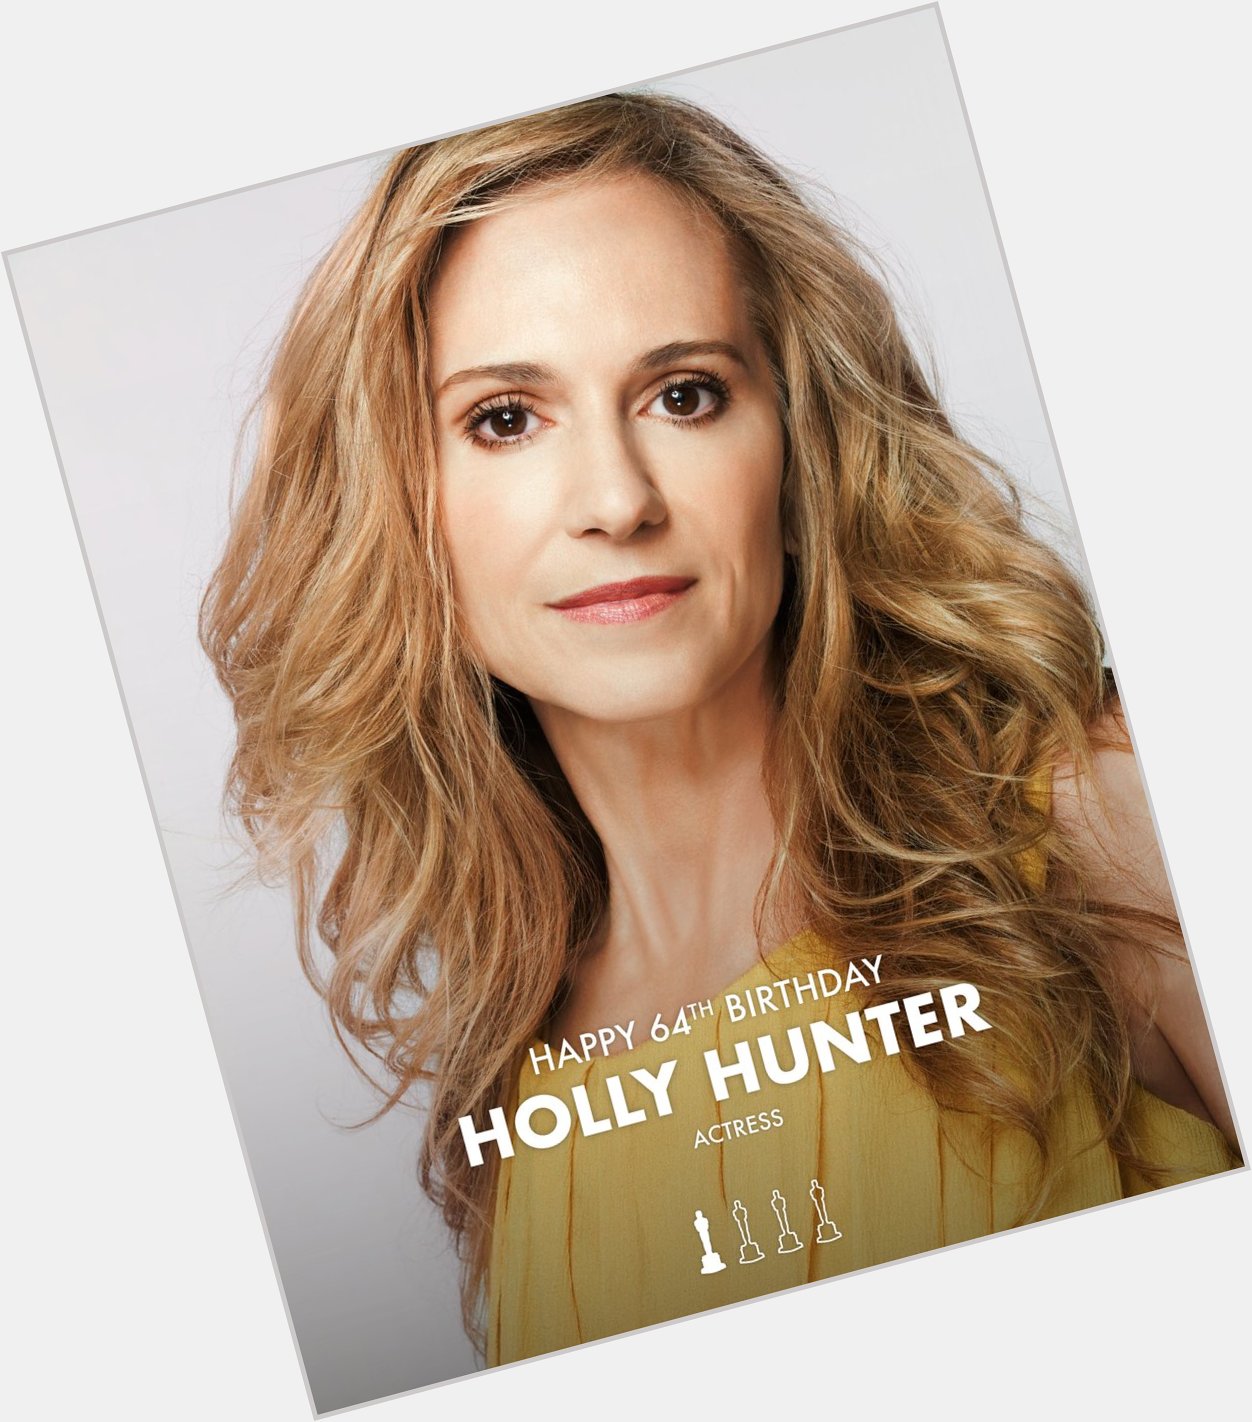 Happy 64th Birthday to Holly Hunter.    